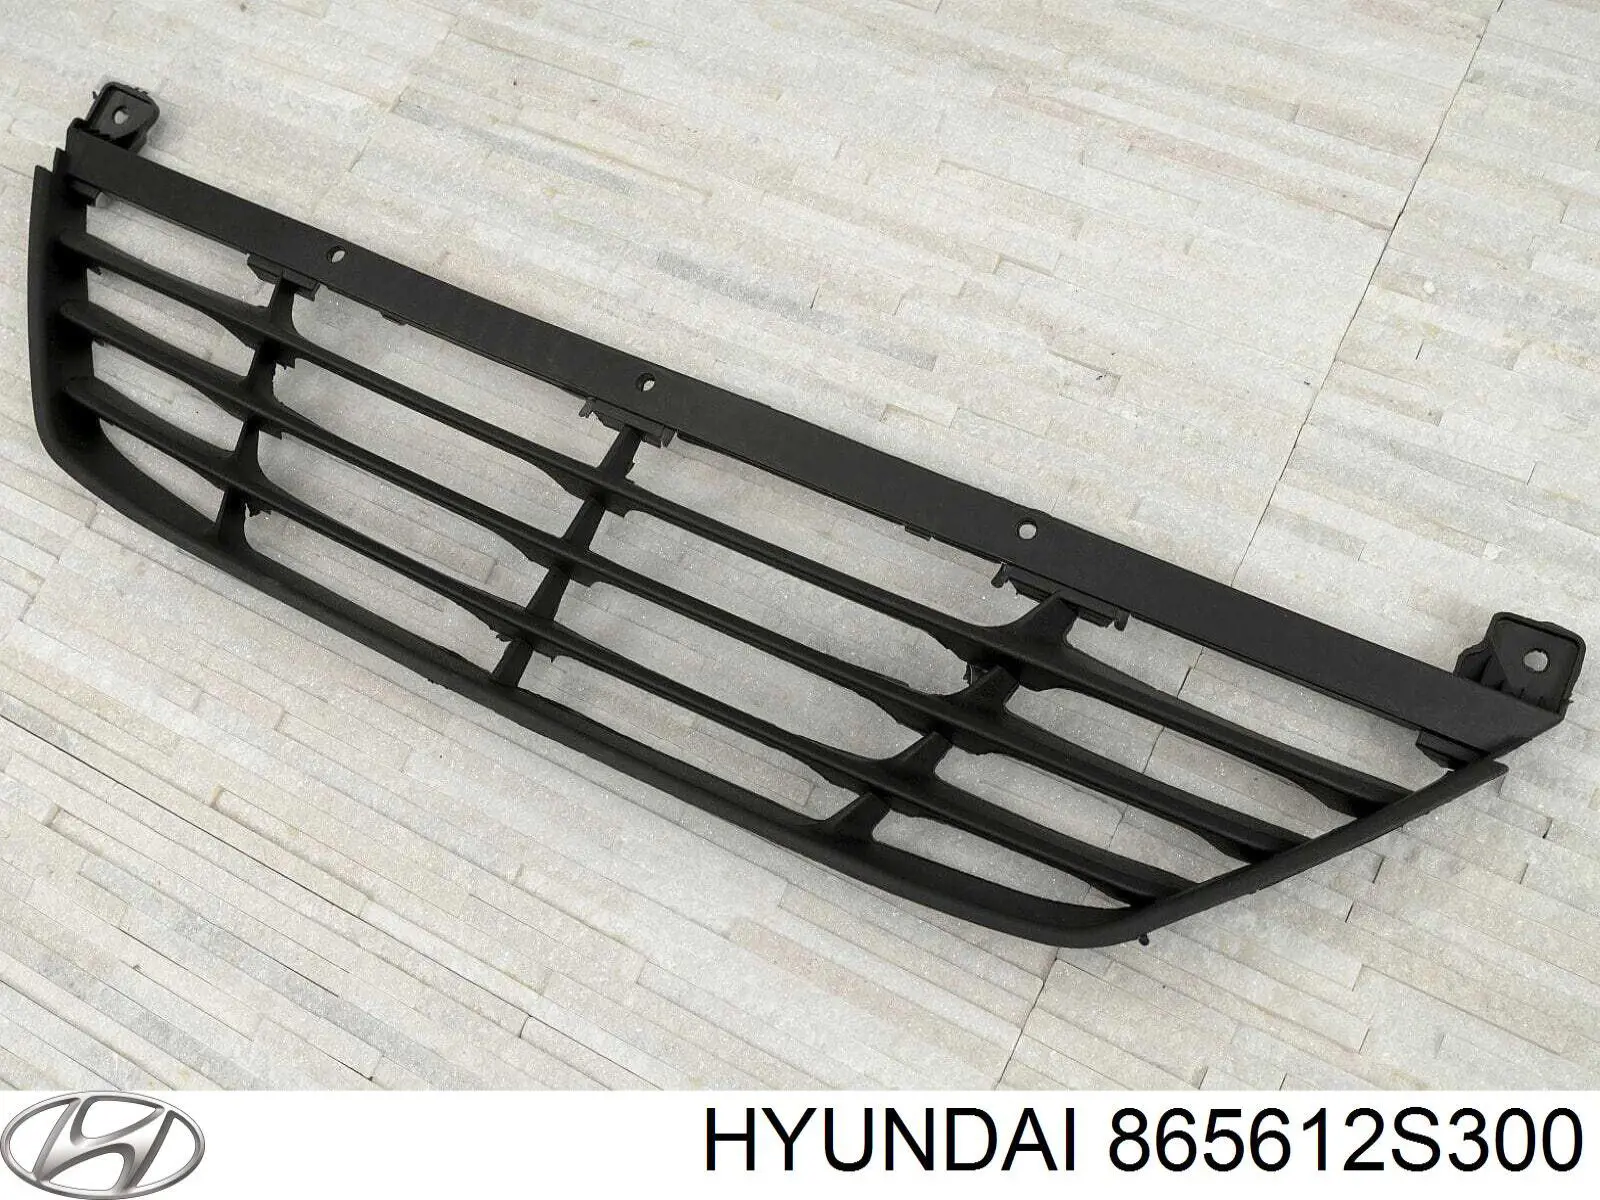 865612S300 Hyundai/Kia rejilla de ventilación, parachoques trasero, central